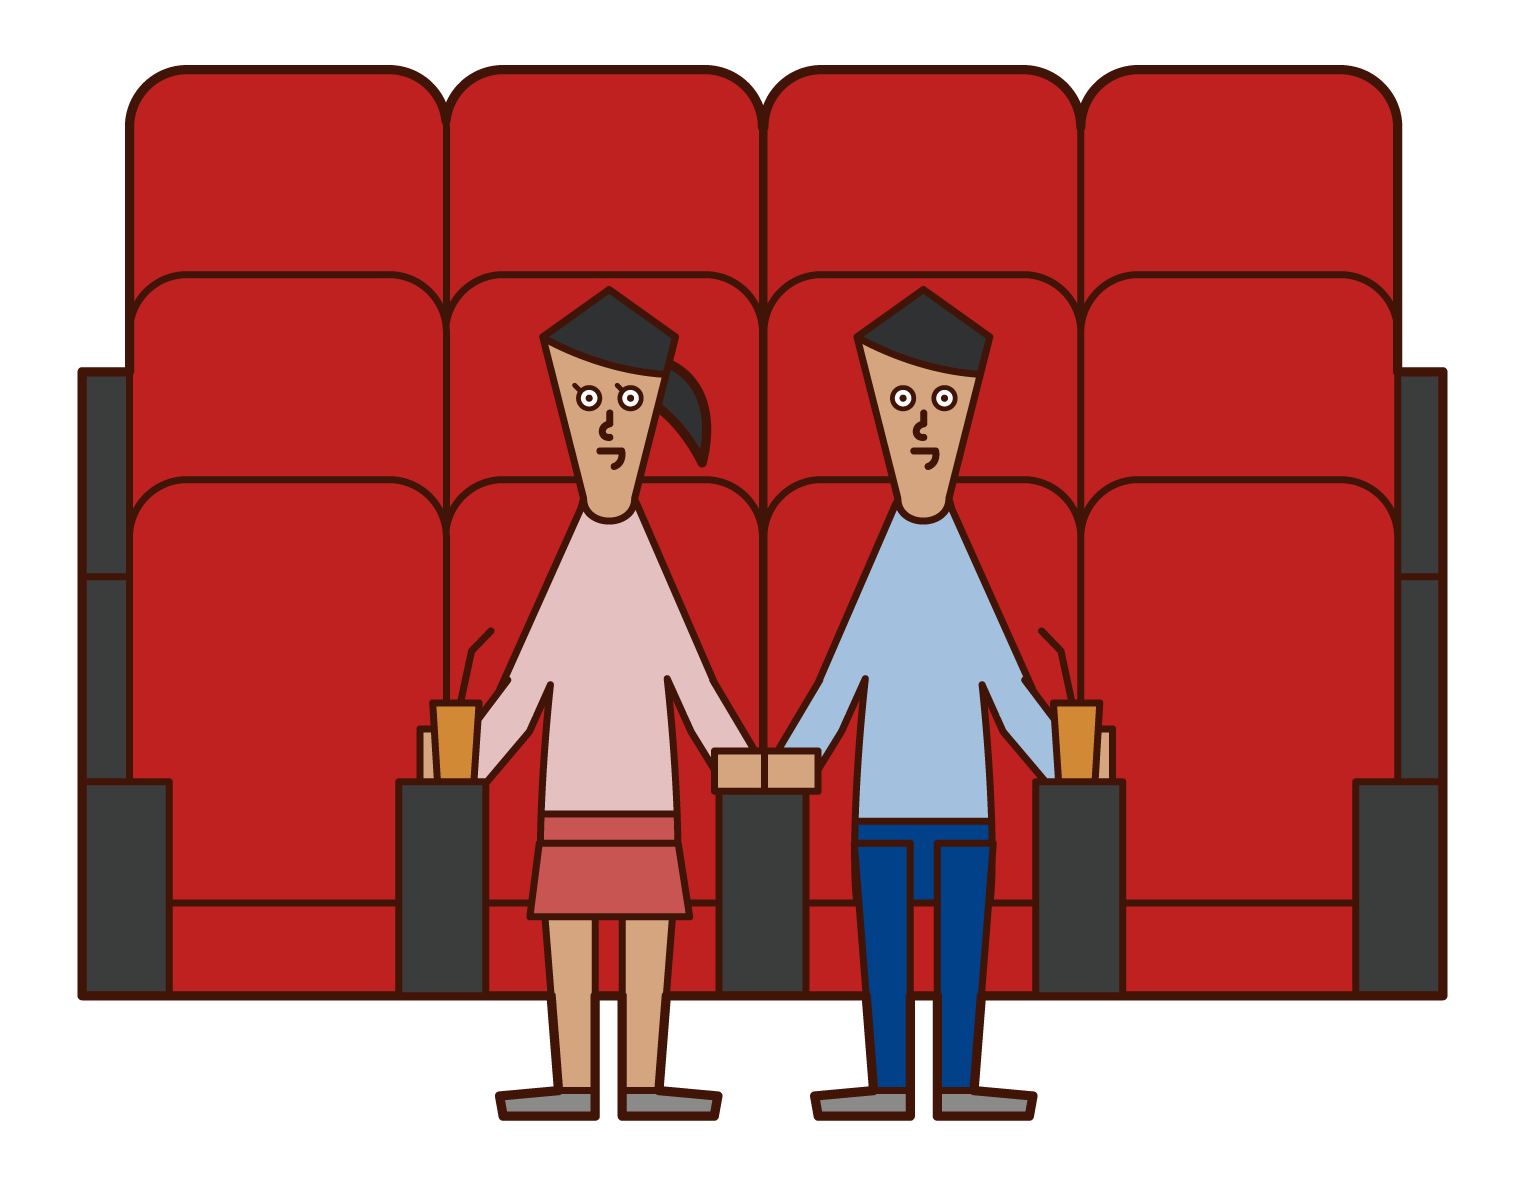 映画館で映画を見る人たちのイラスト